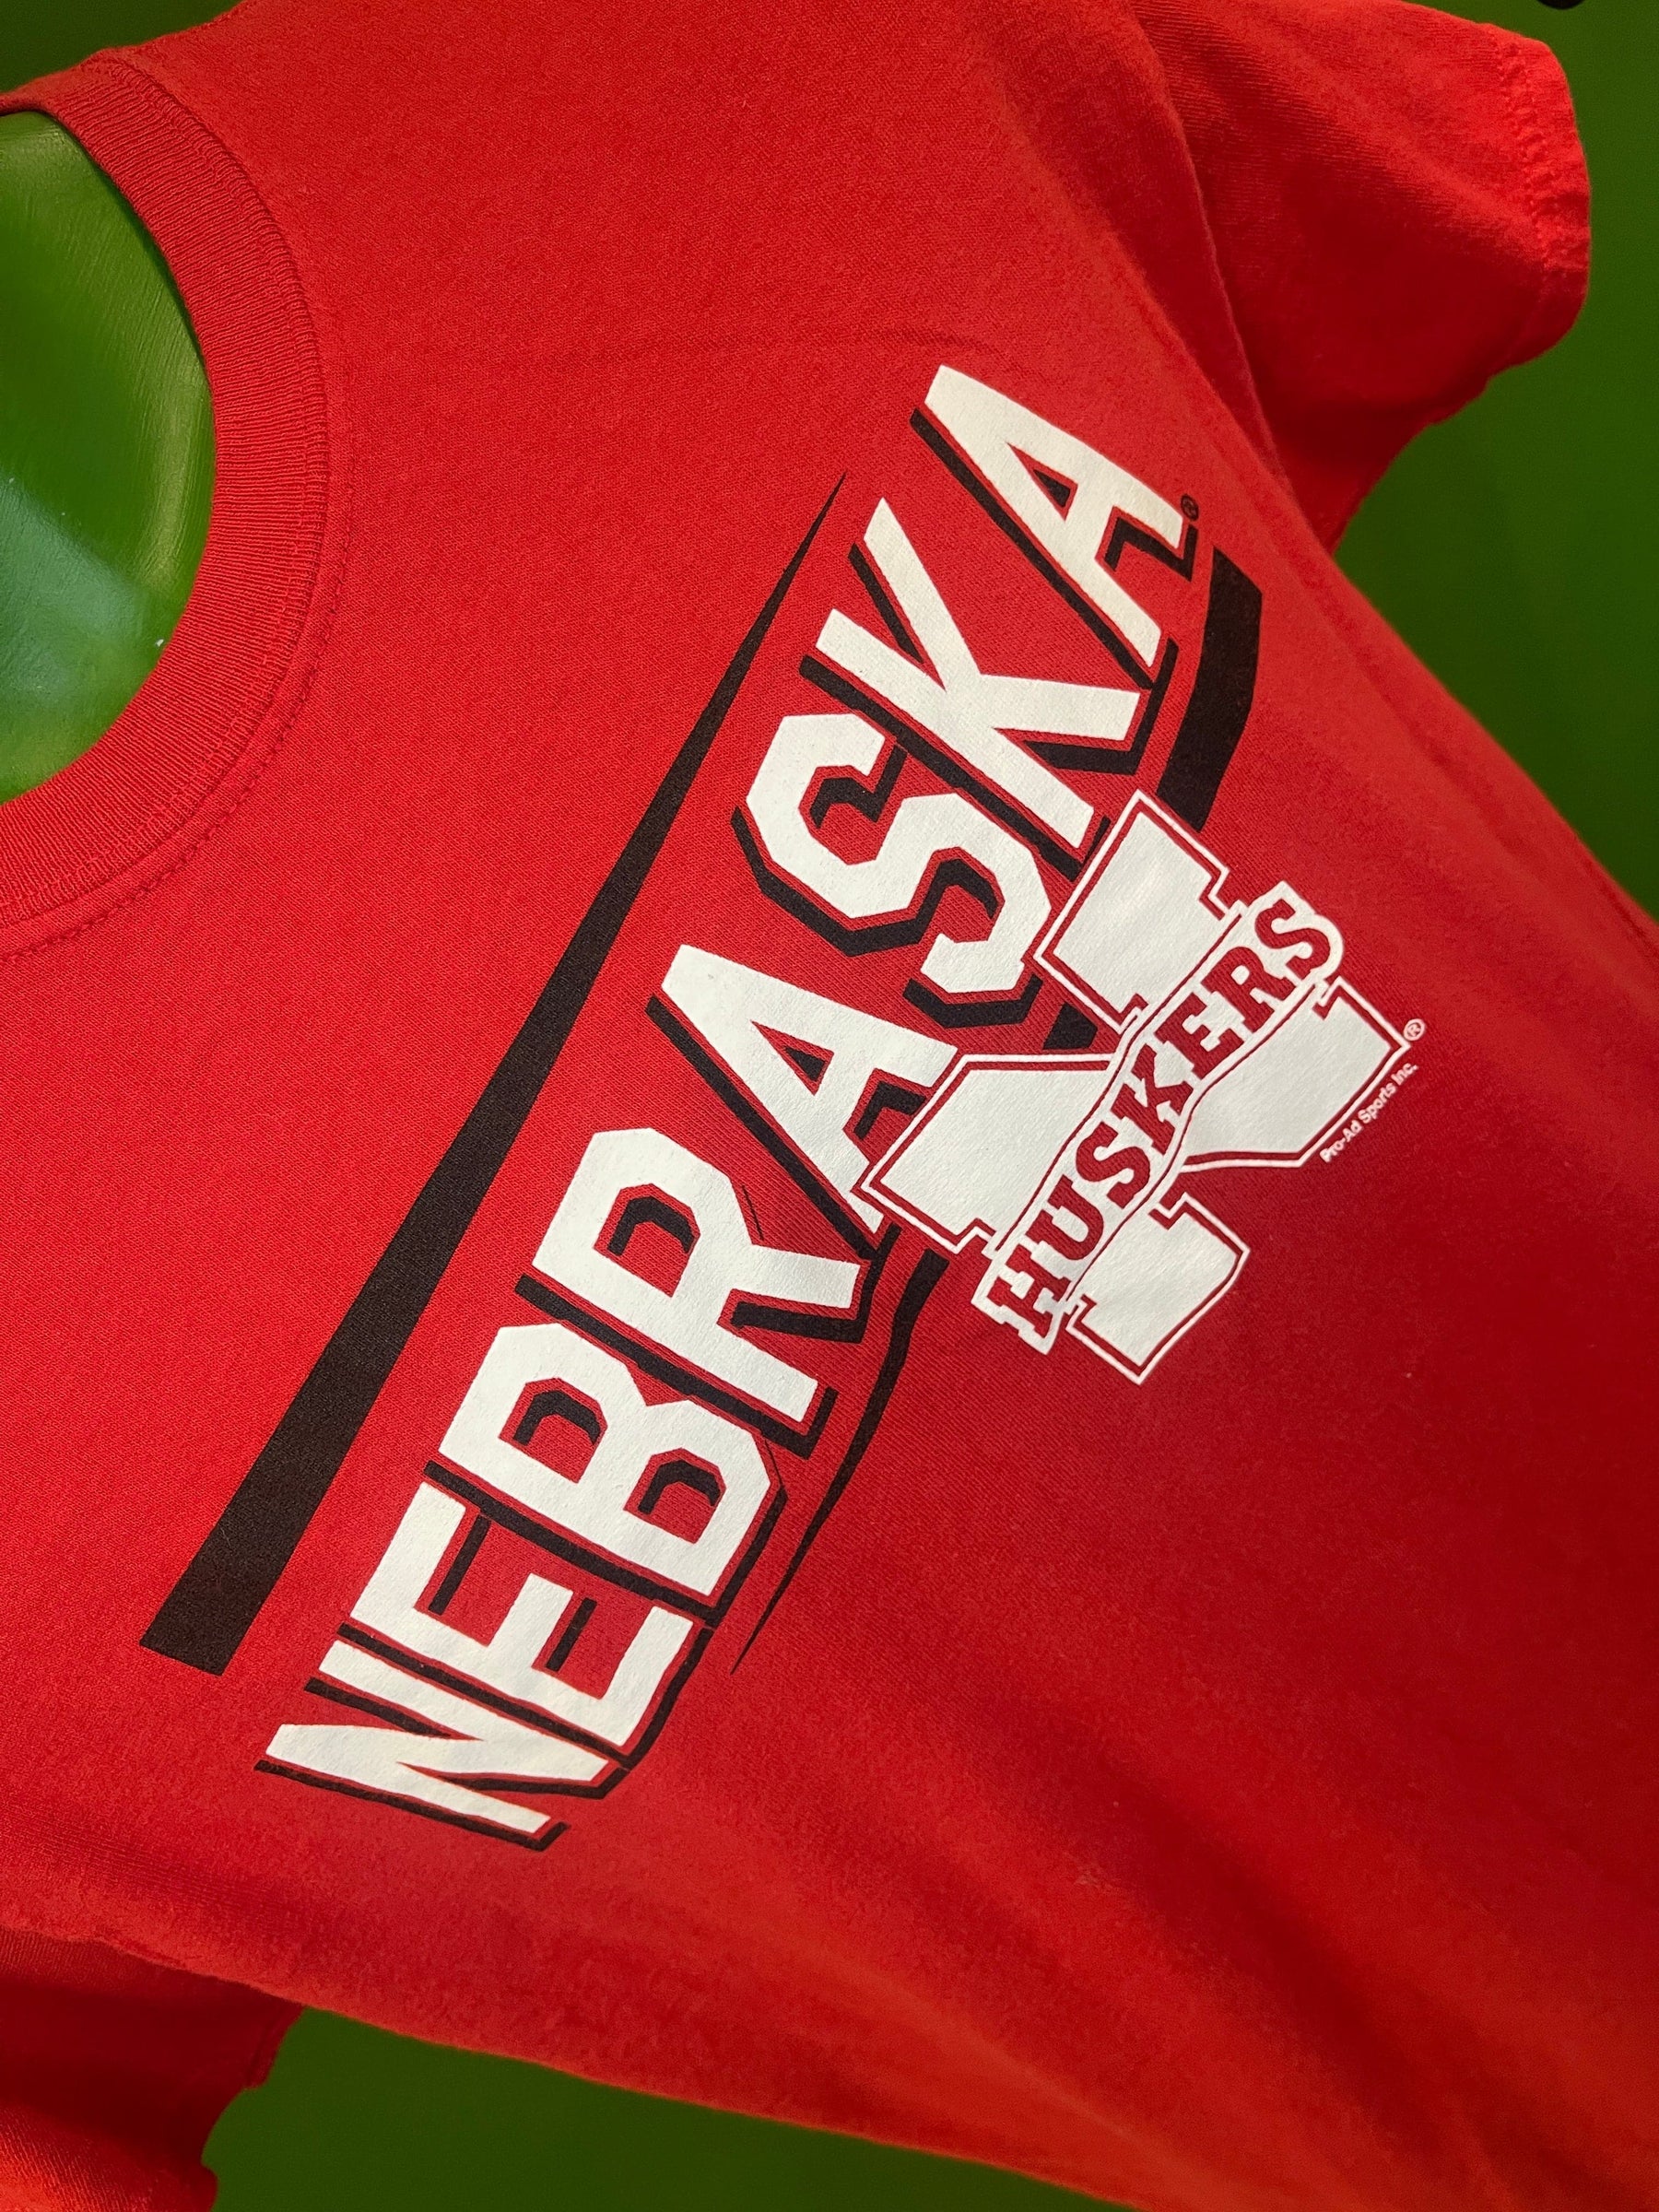 NCAA Nebraska Cornhuskers Bright Red T-Shirt Men's Medium